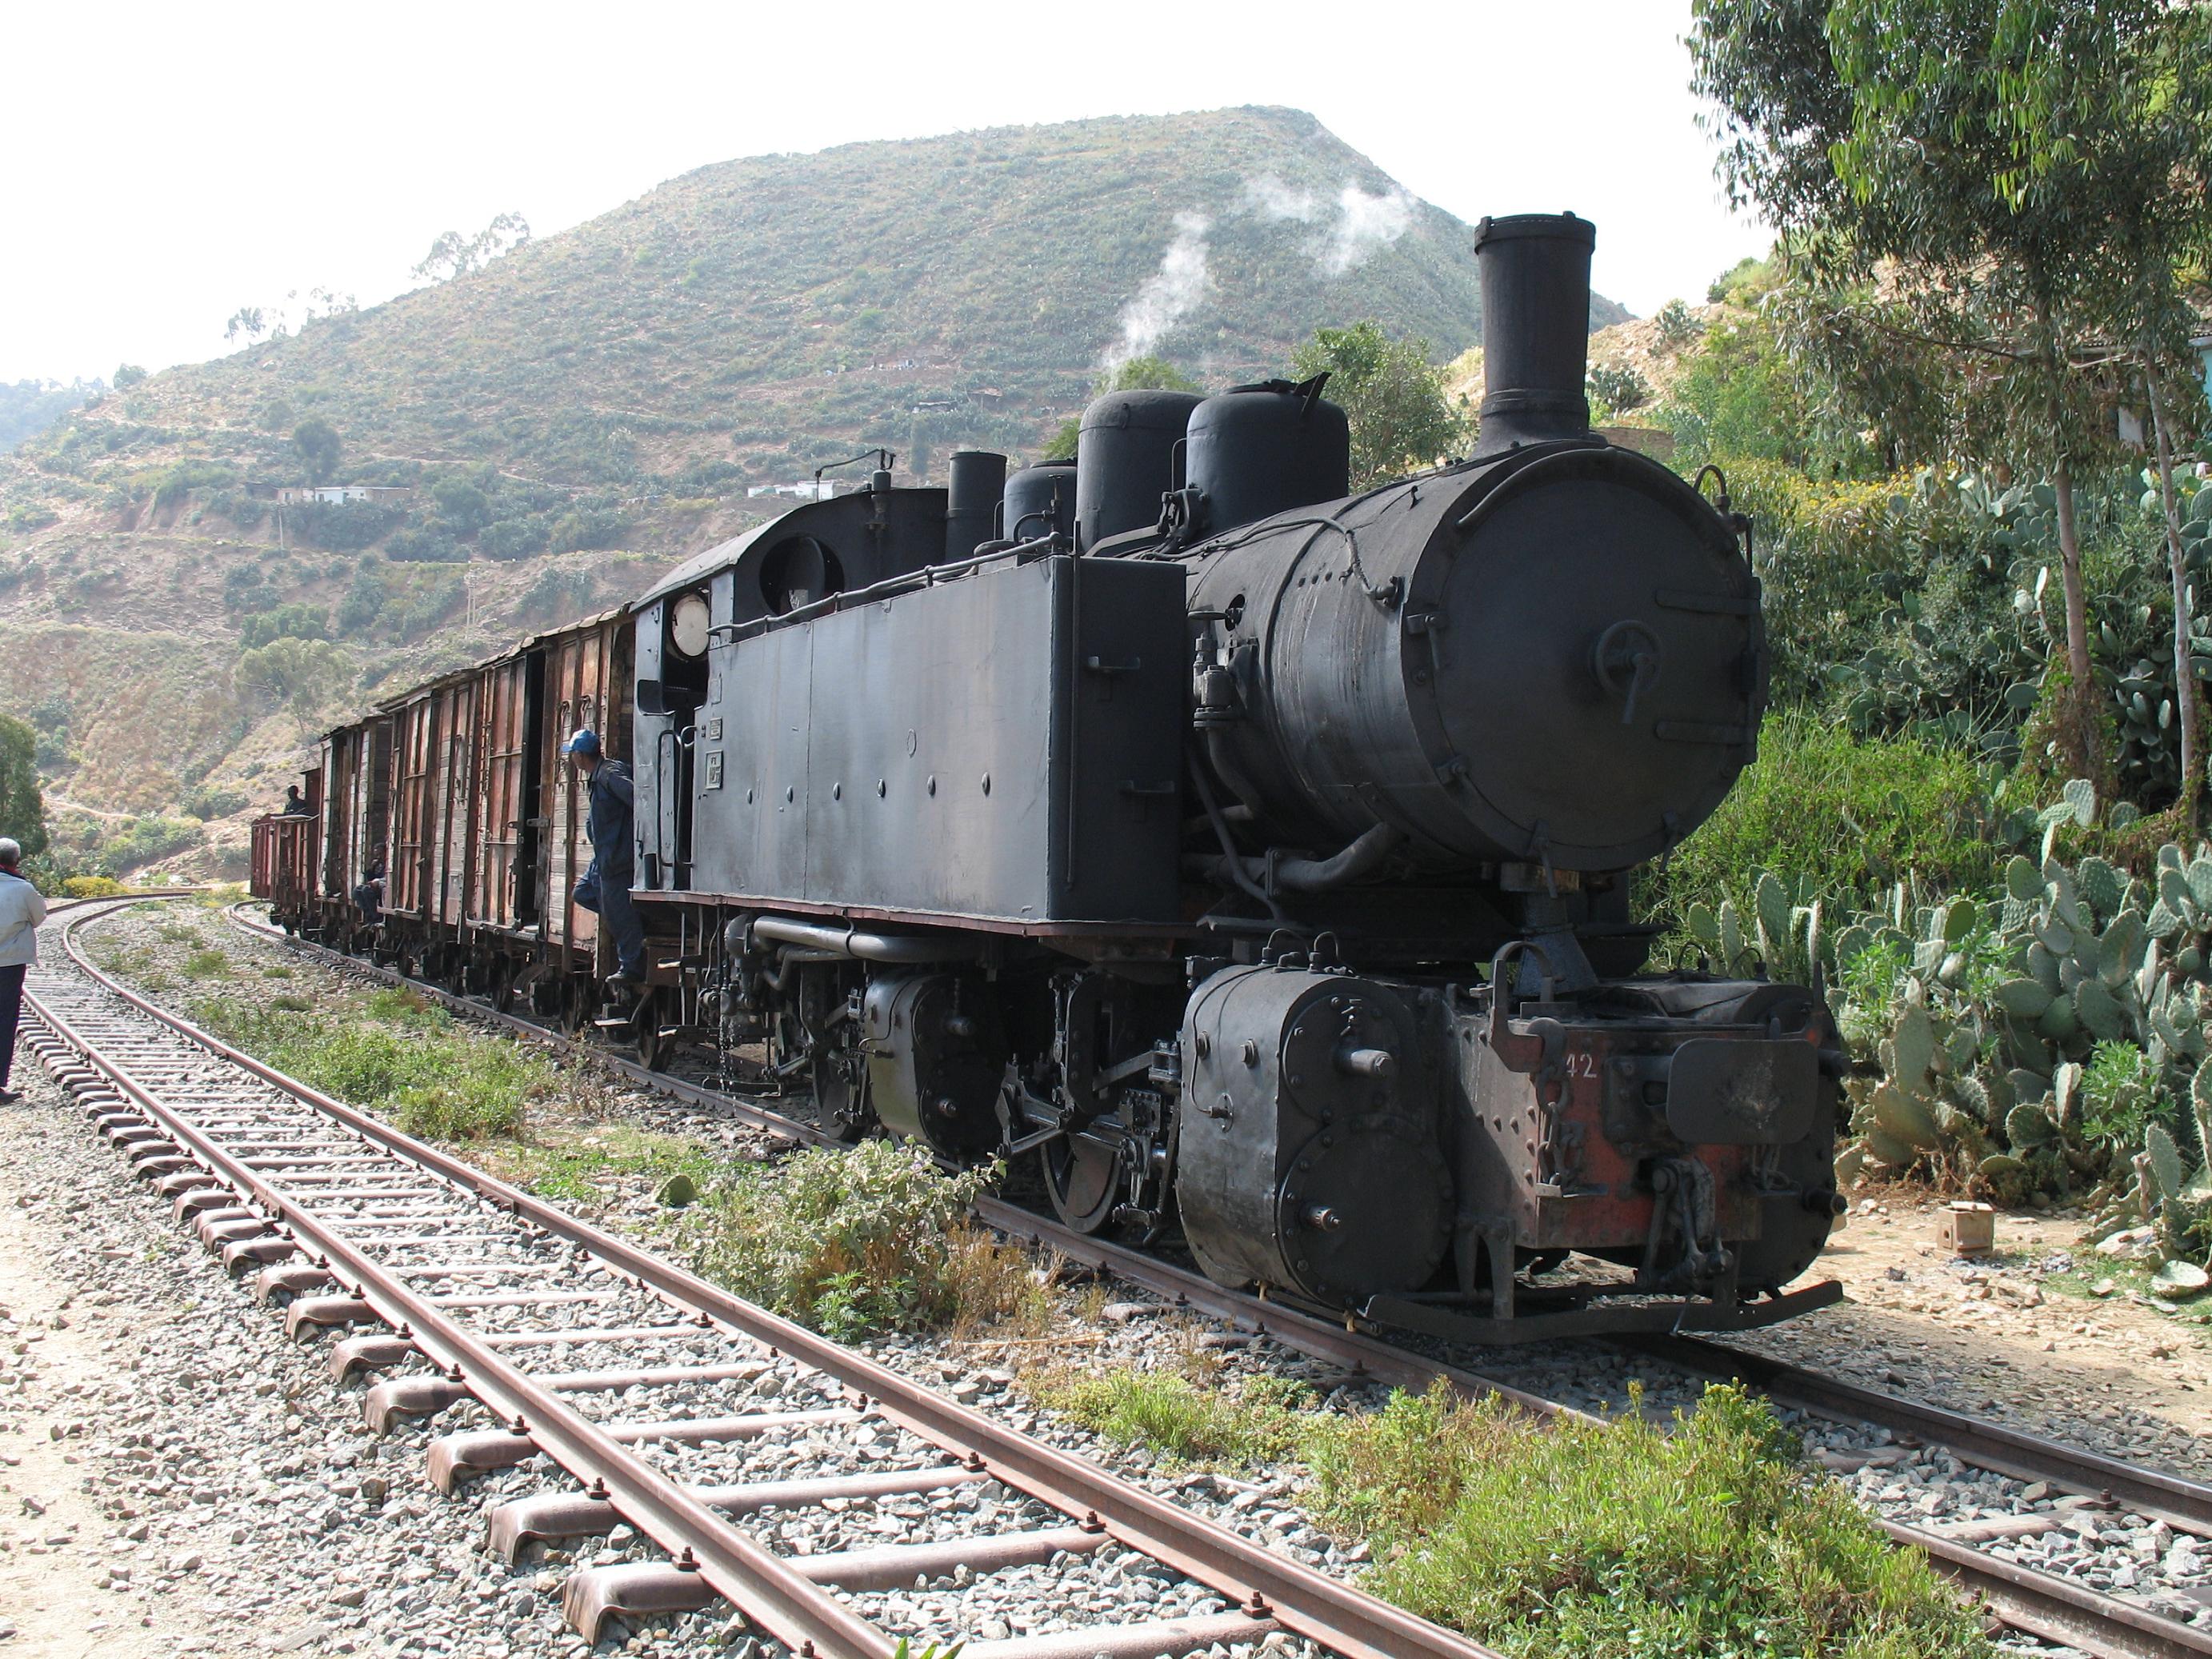 Ansaldo_442_steam_locomotive_in_Eritrea.JPG